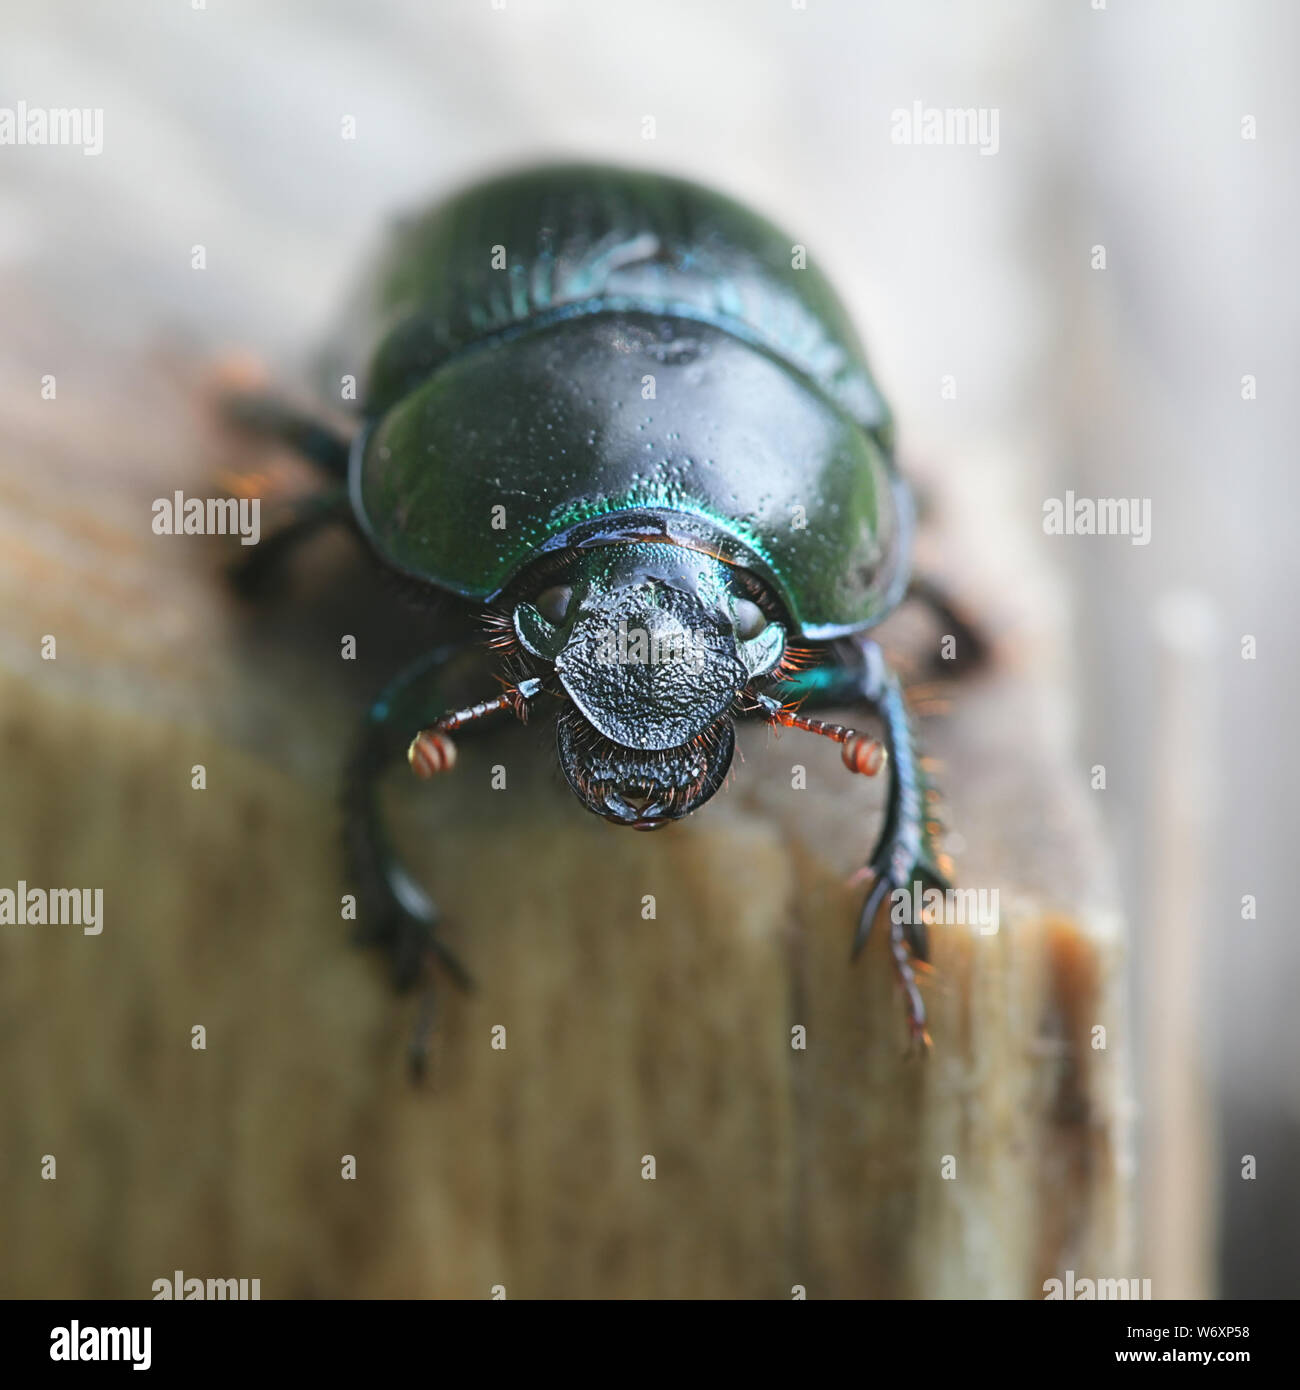 Anoplotrupes stercorosus, connu sous le nom de dor beetle, une espèce de terre plate-bousiers Banque D'Images